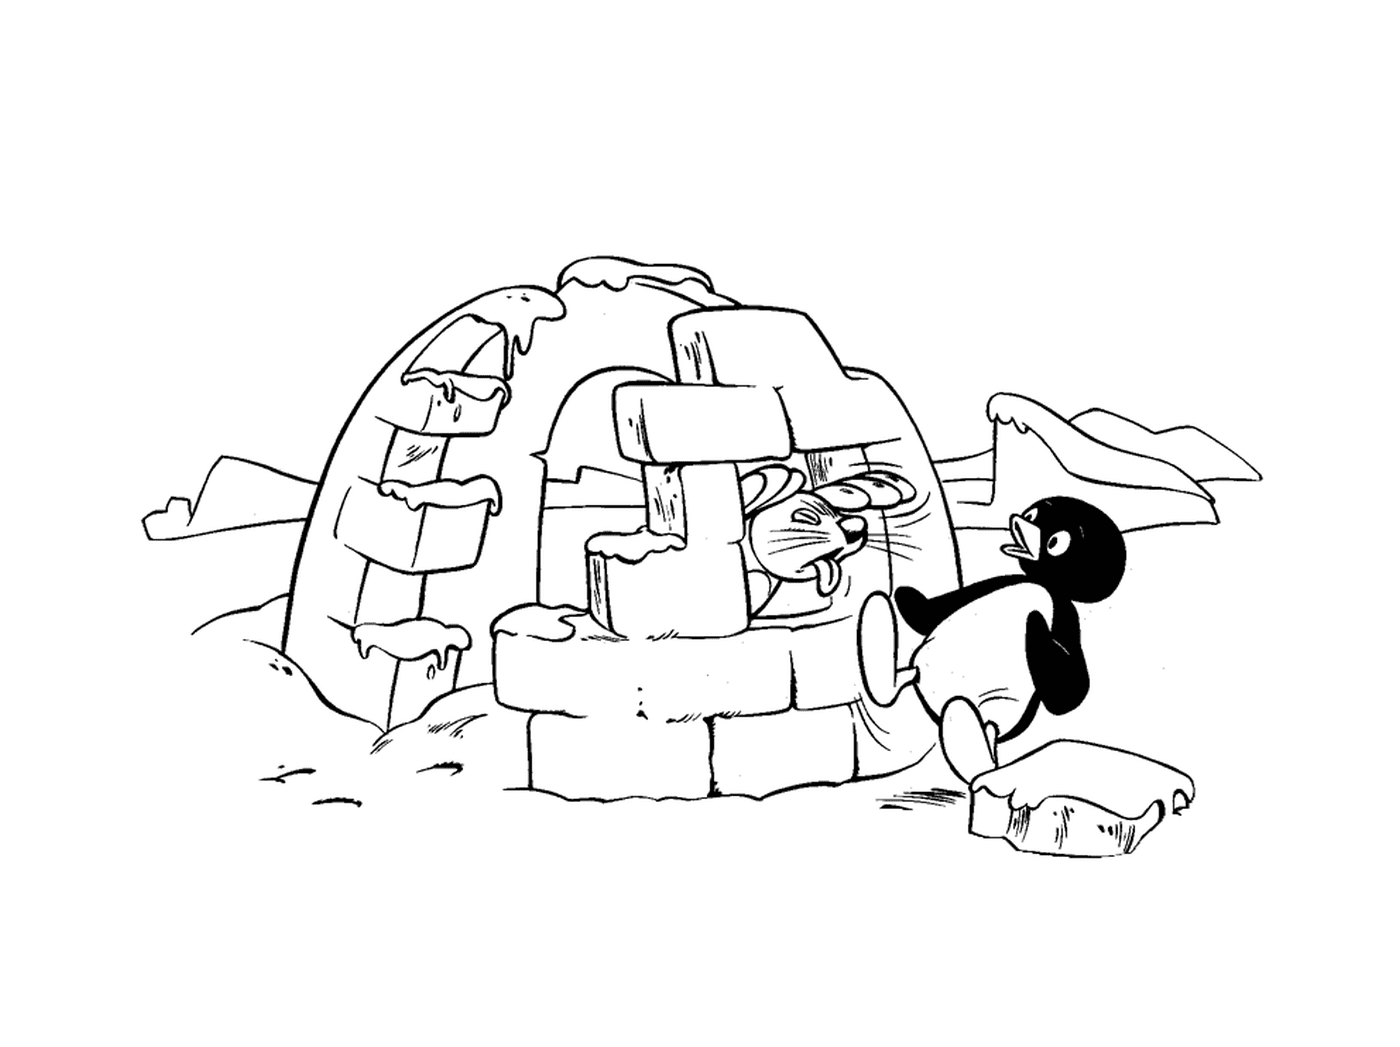  Pingu perto de um iglu com um selo 